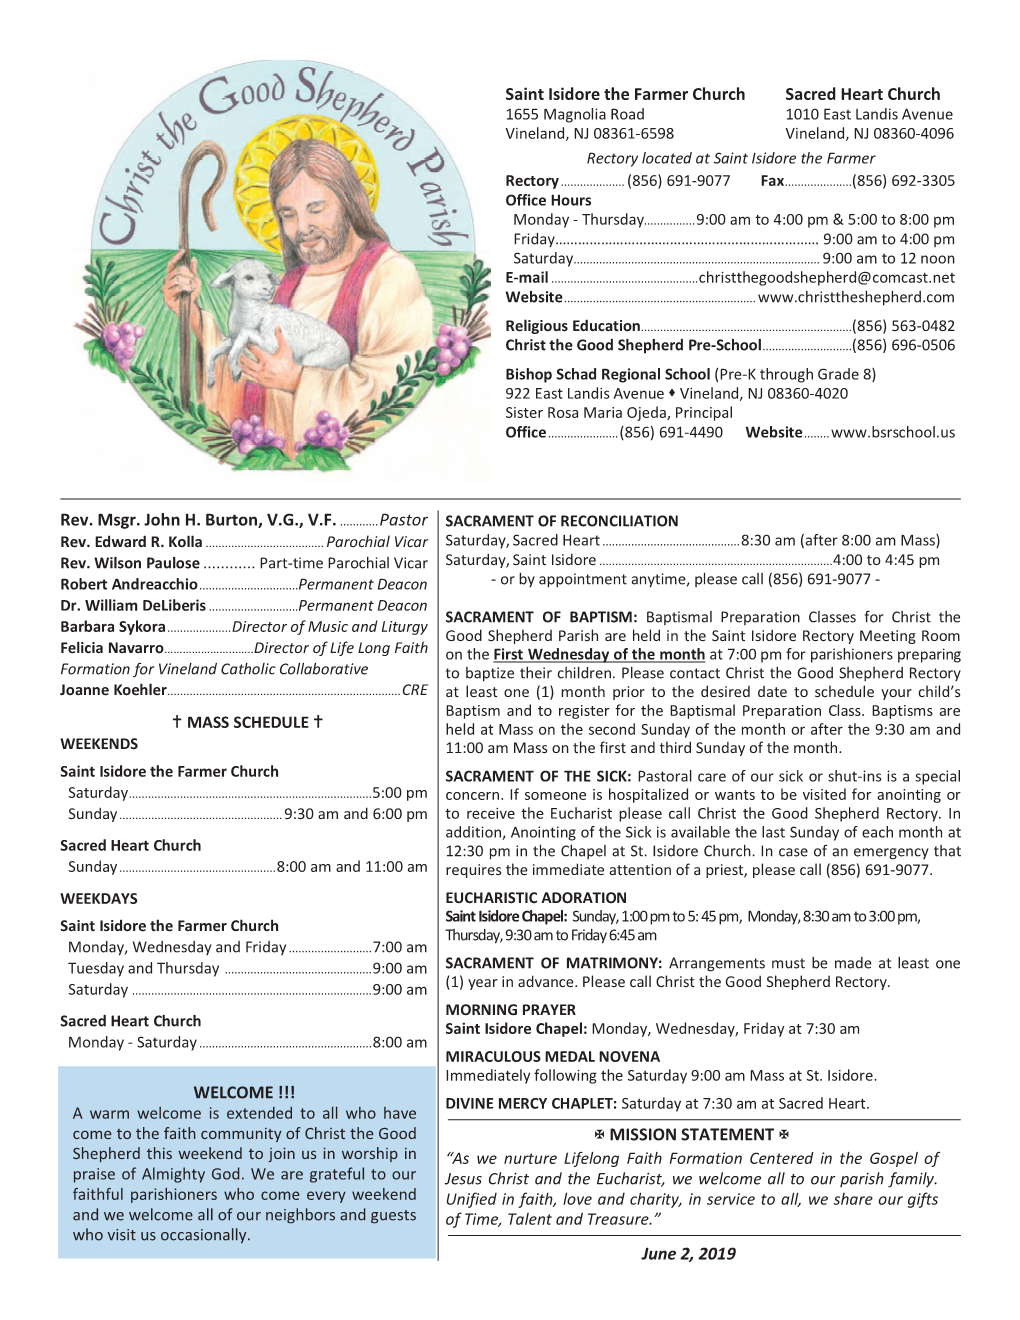 June 2, 2019 Saint Isidore the Farmer Church Sacred Heart Ch